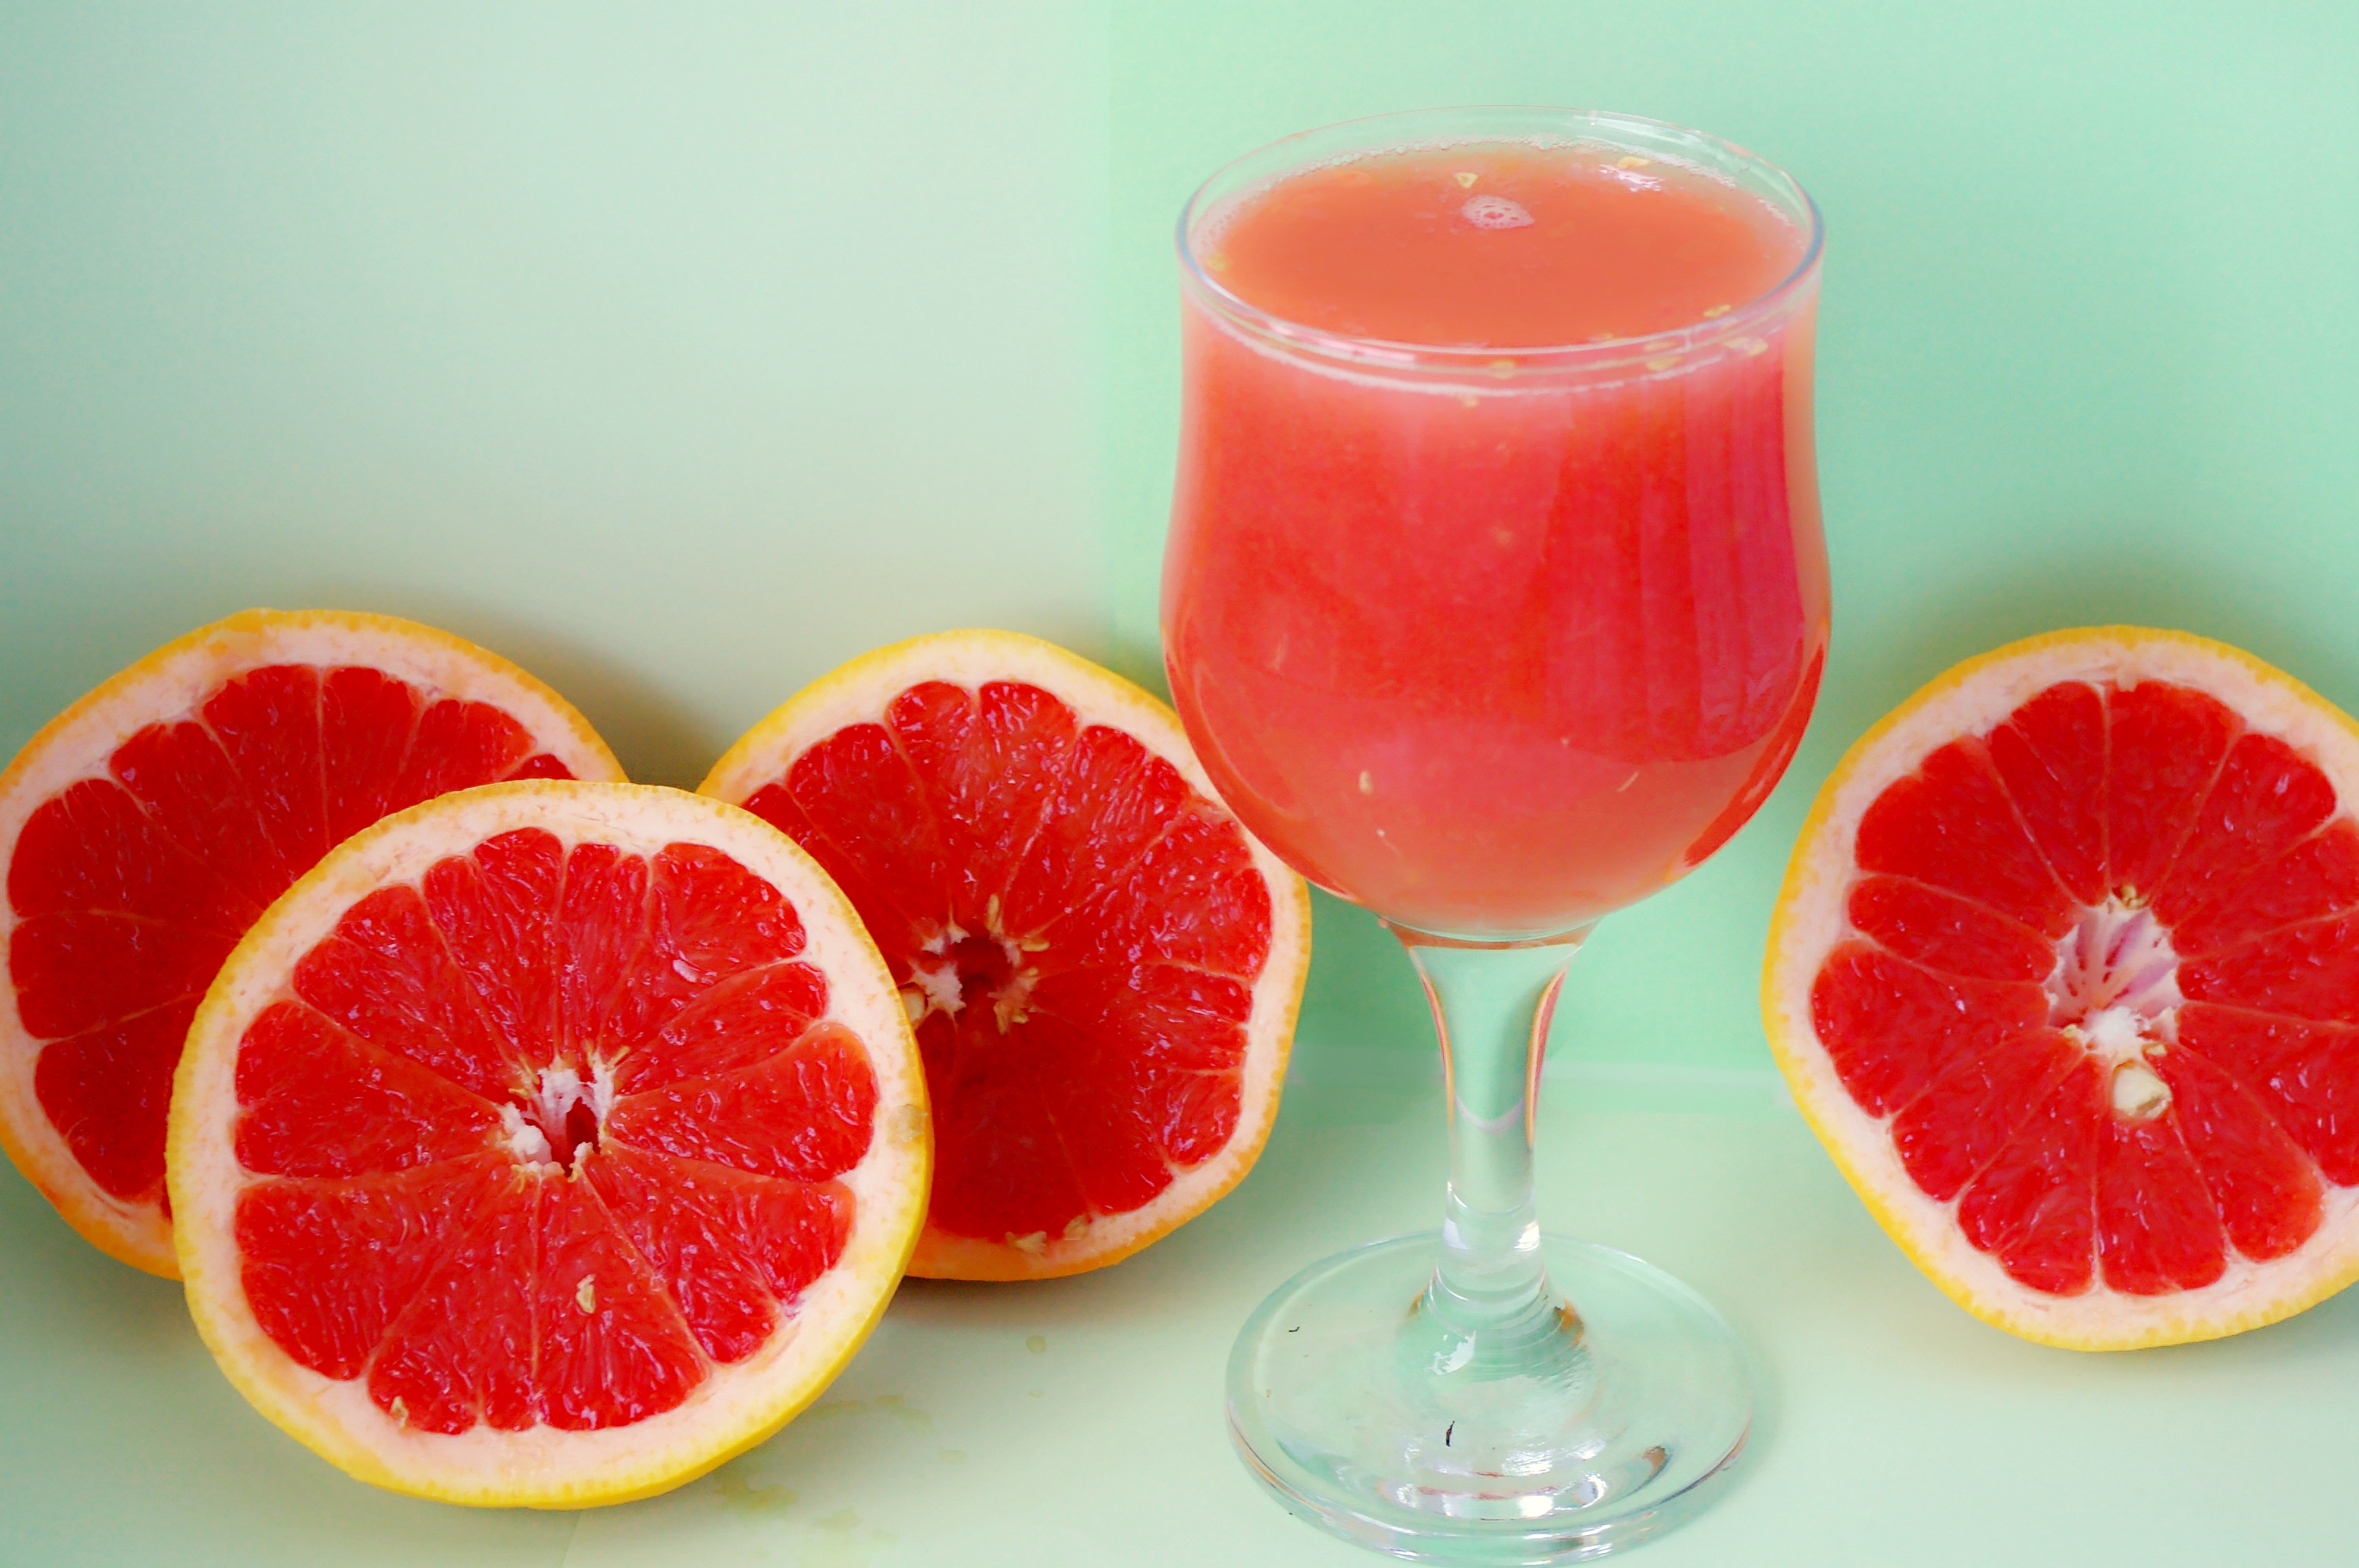 Health benefits of grapefruit